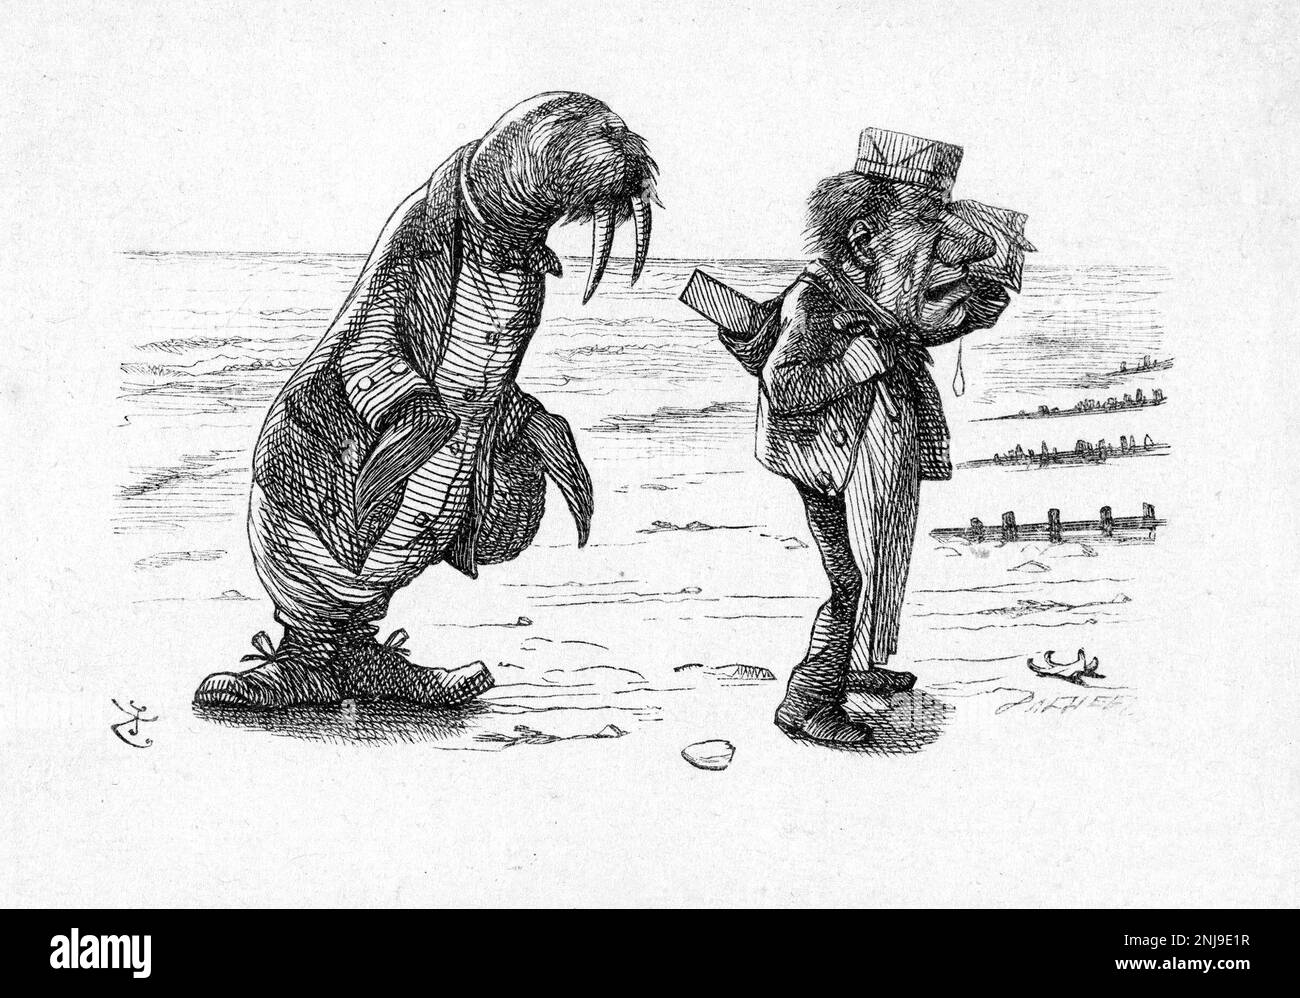 The Walrus and the Carpenter, un'illustrazione di Sir John Tenniel per "Through the Looking-Glass, and What Alice Found There" di Lewis Carroll, incisione del legno, 1872 Foto Stock